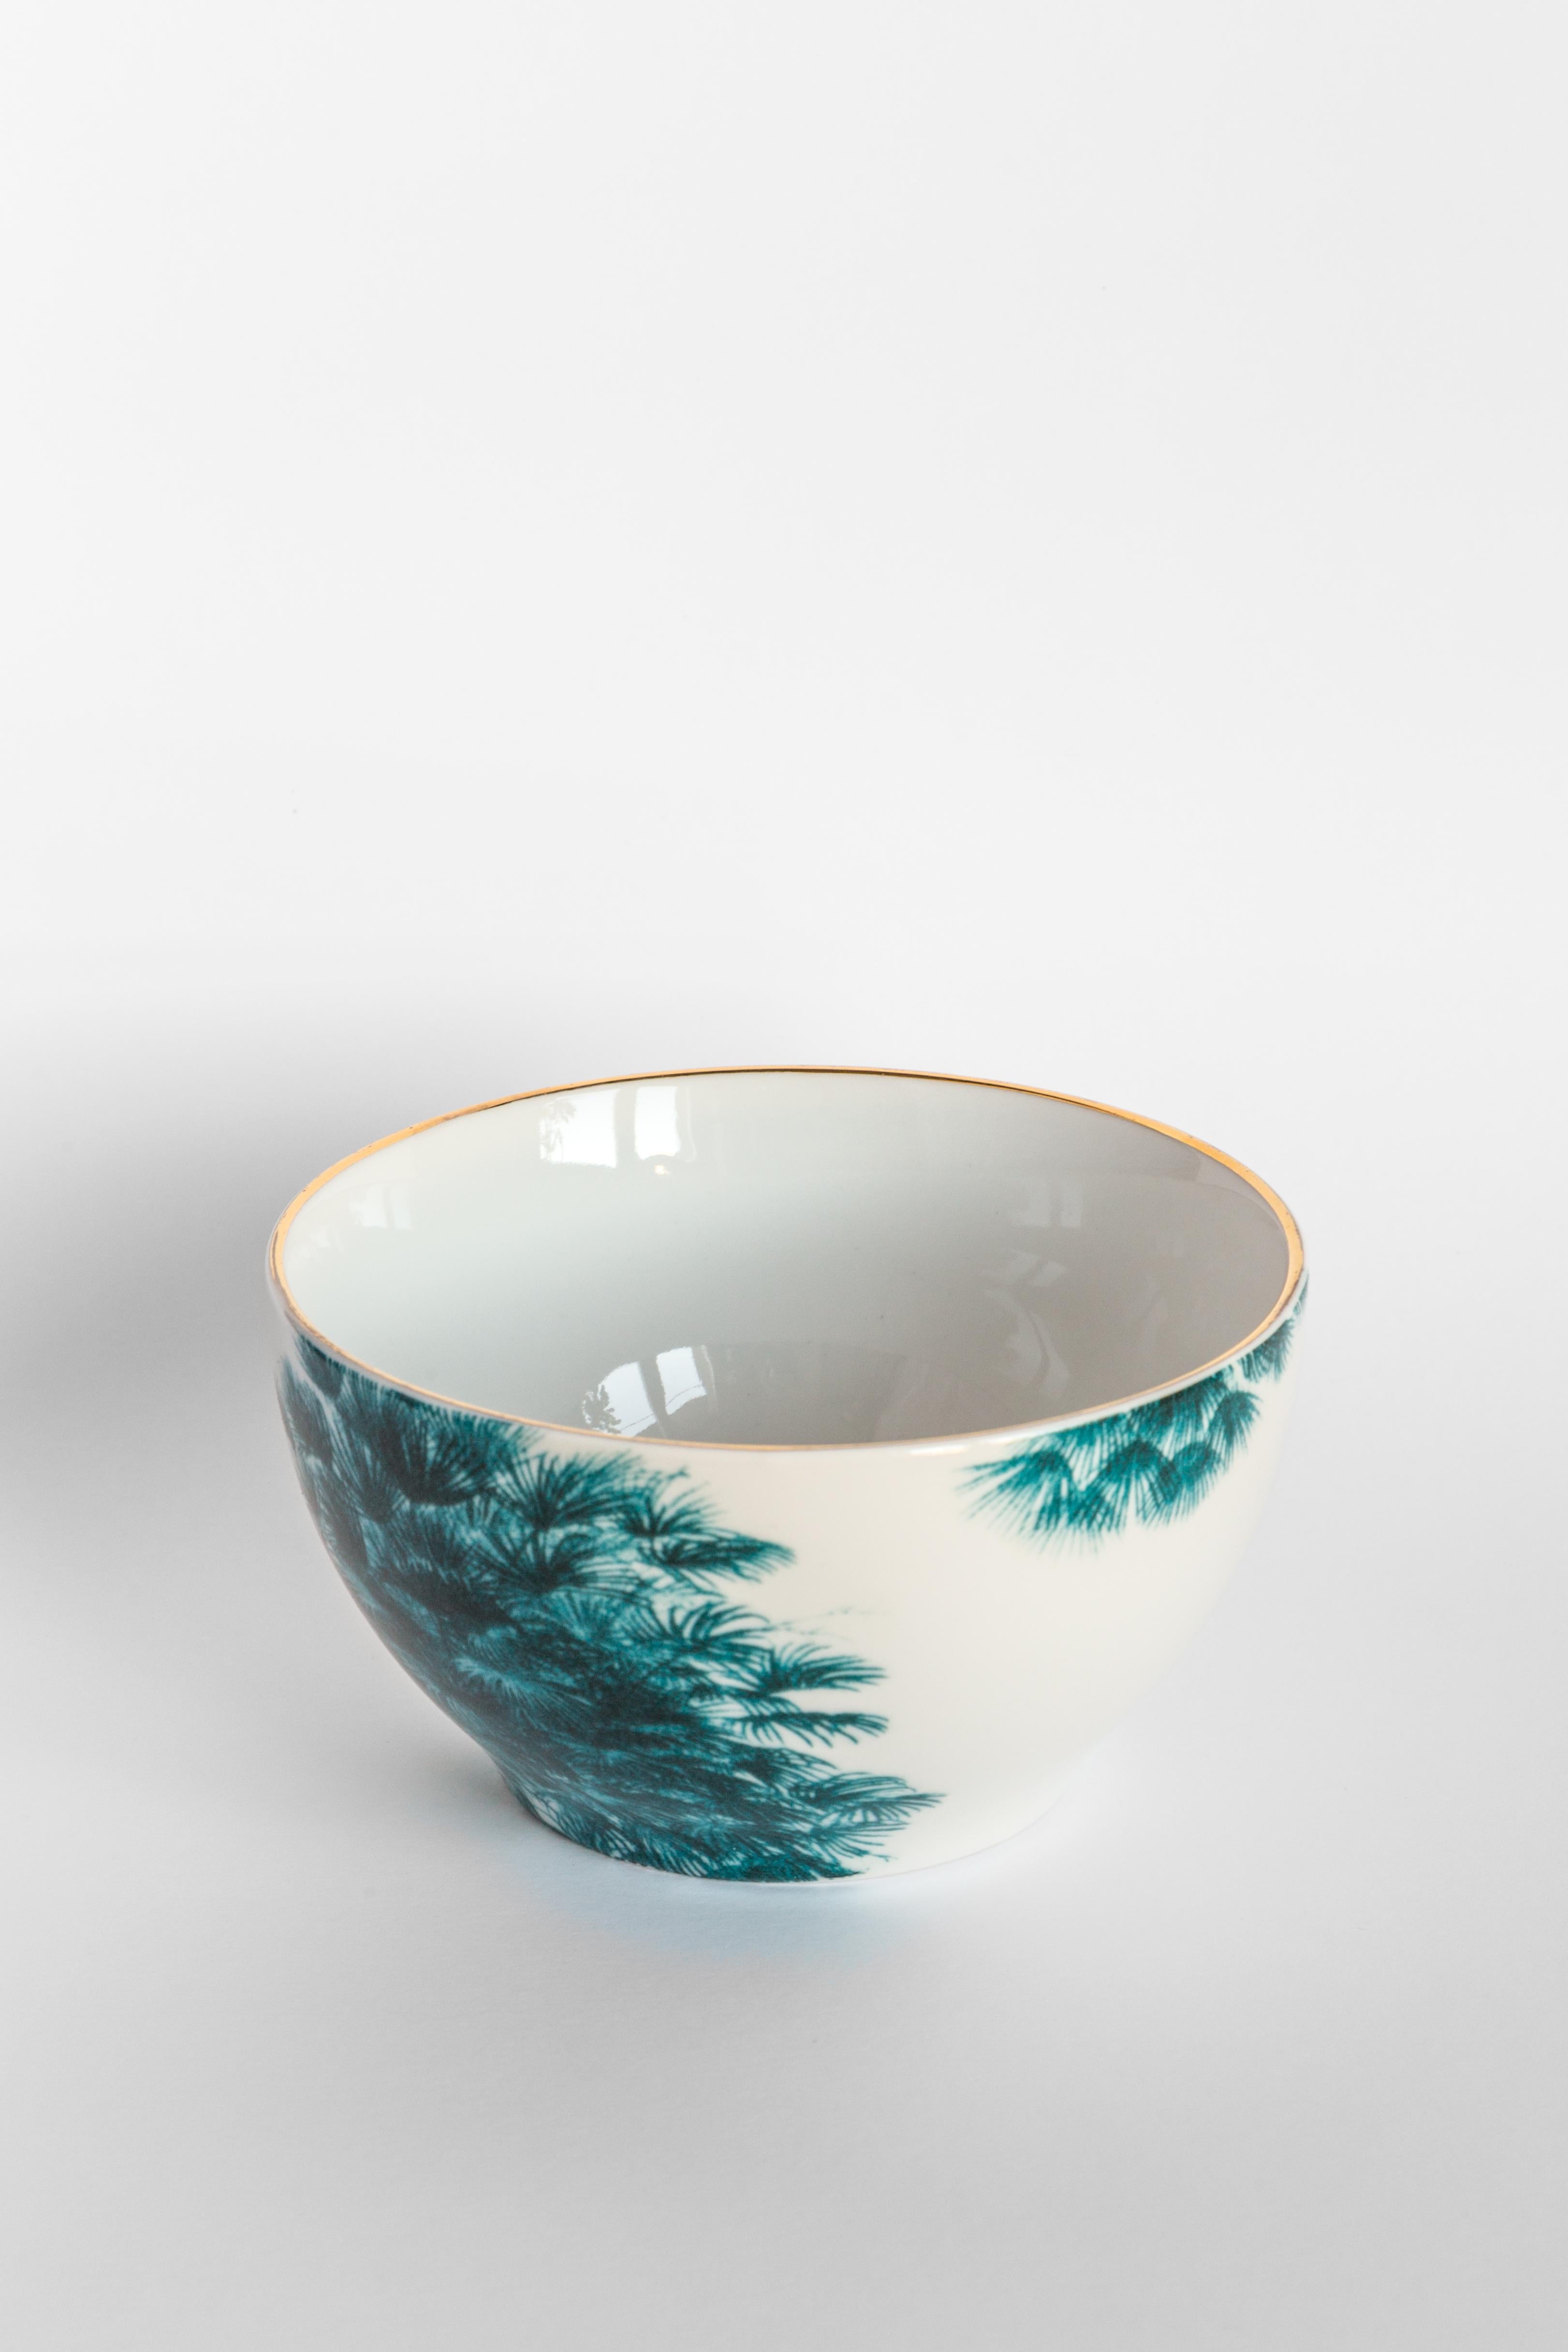 Las Palmas, Six Contemporary Porcelain Bowls with Decorative Design For Sale 2